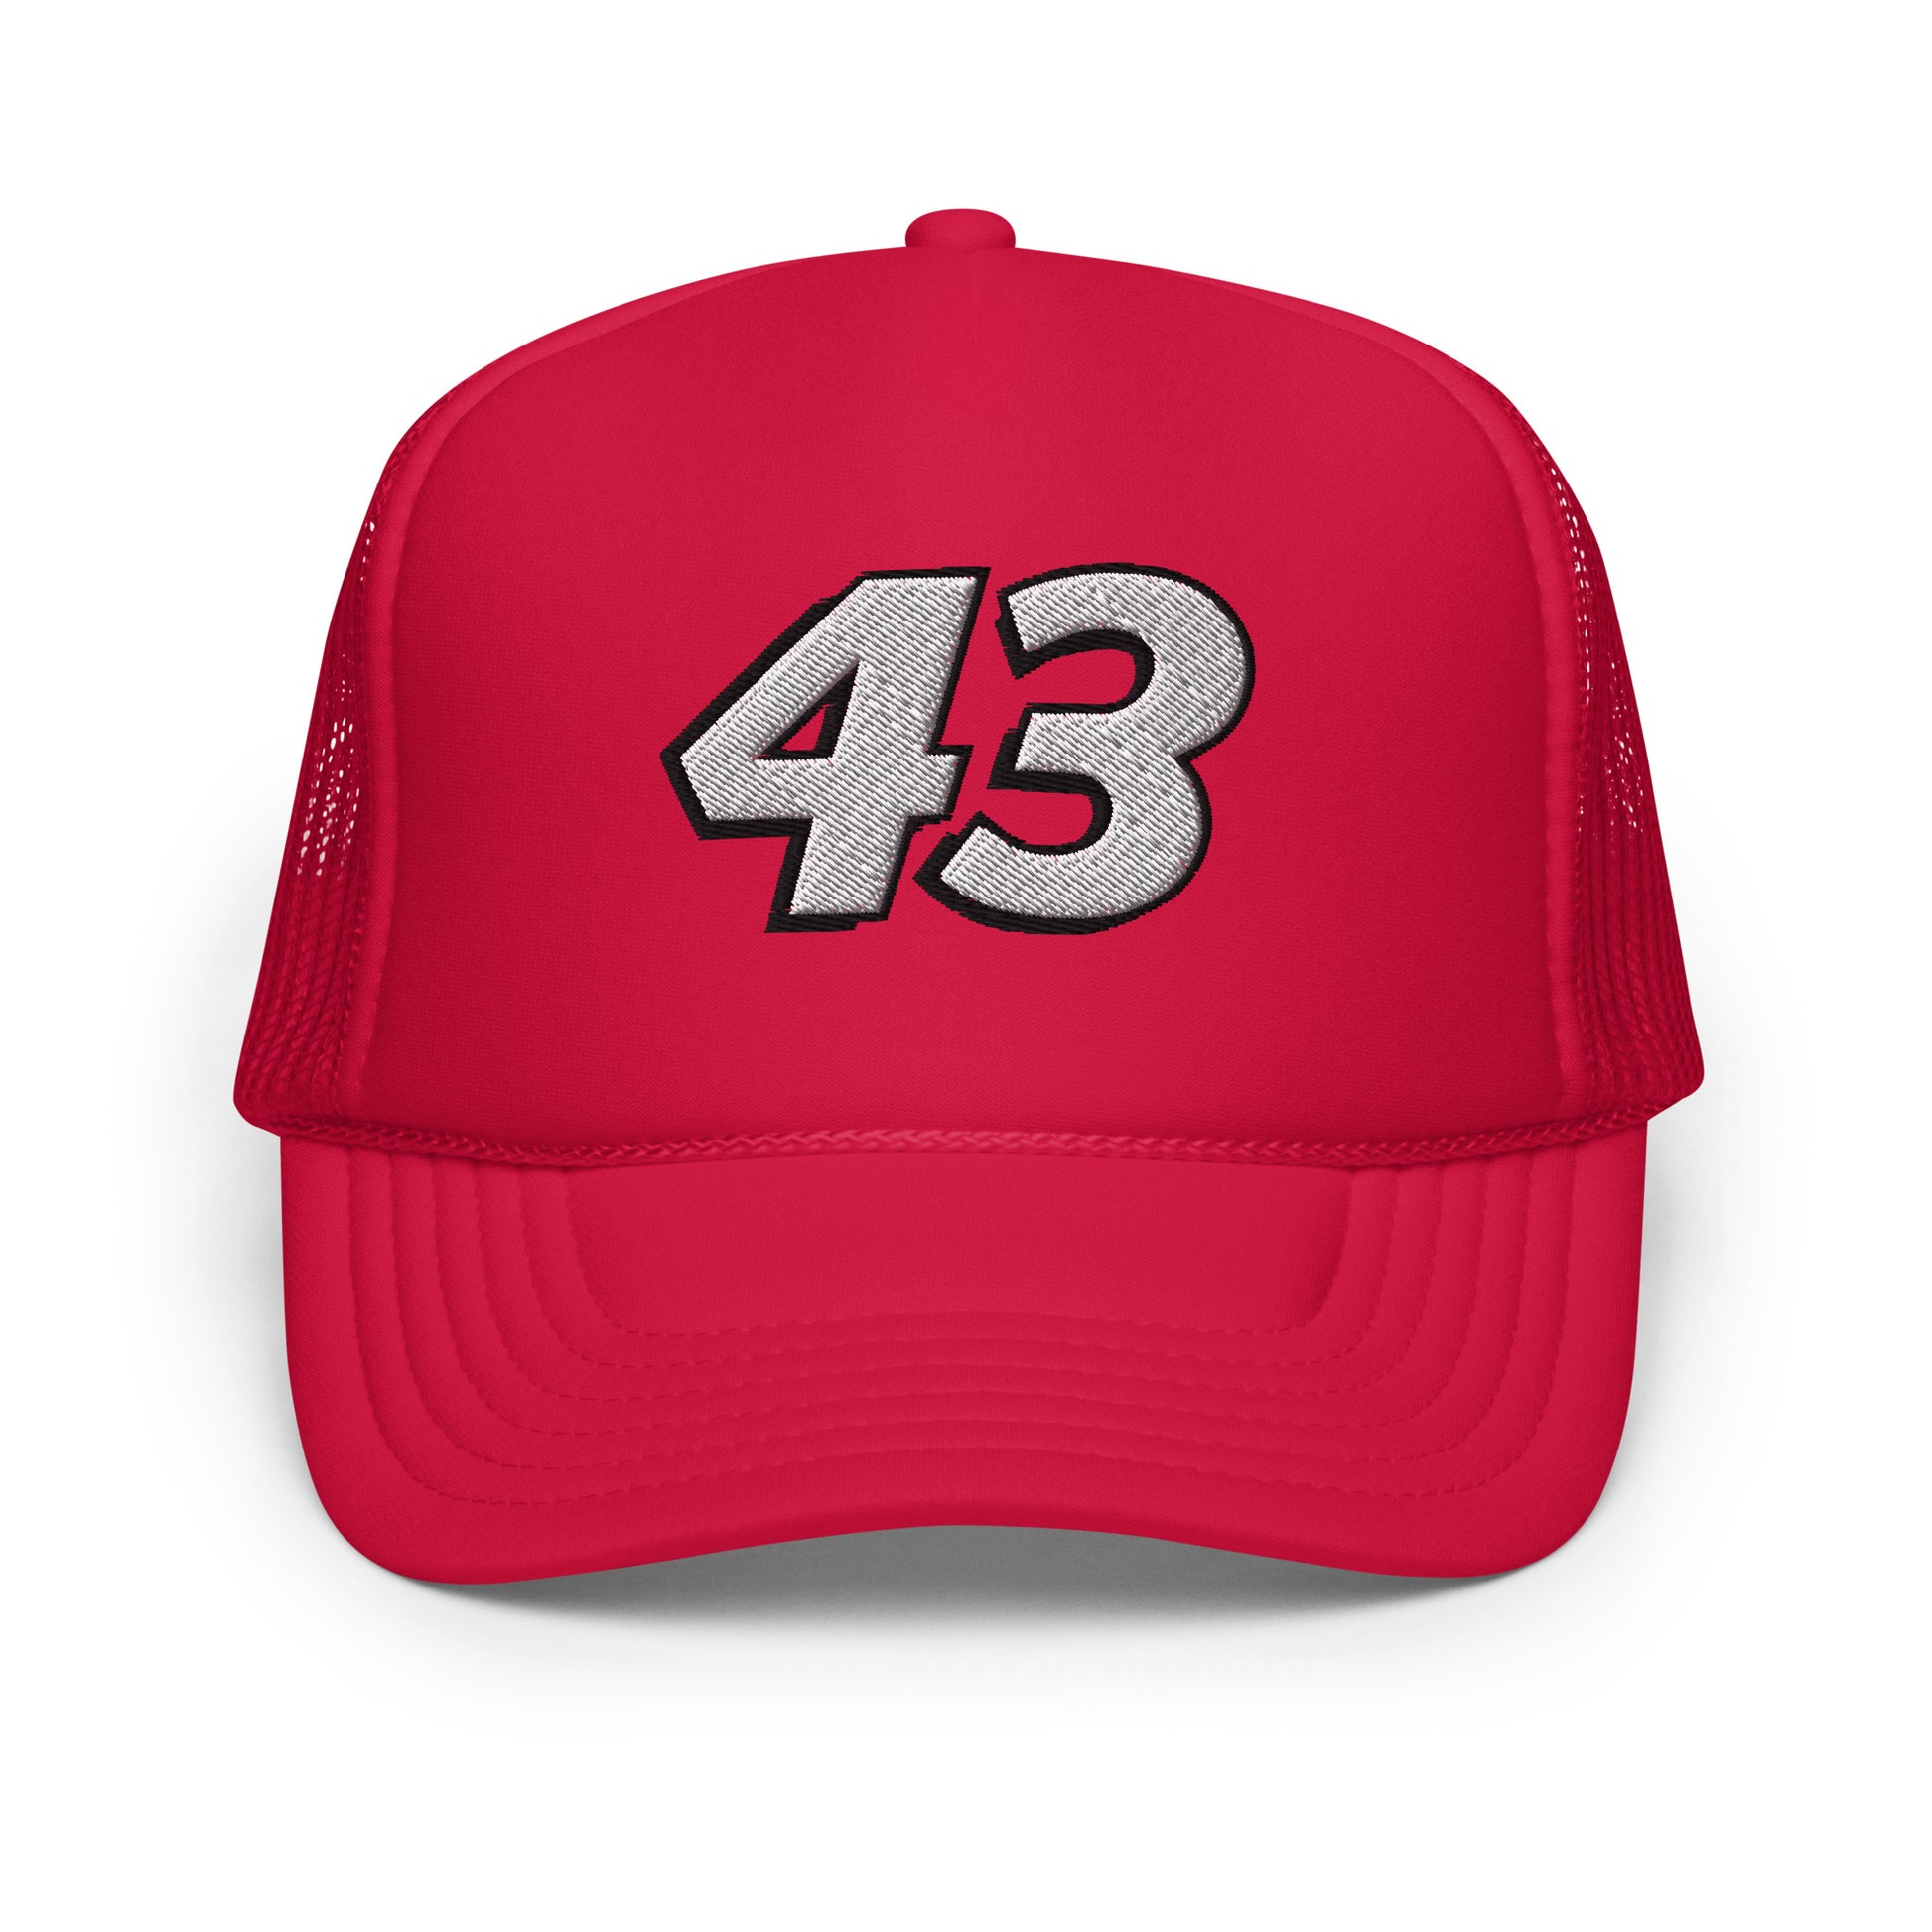 Foam trucker hat - 43 - [Daniel Dye Racing Shop]